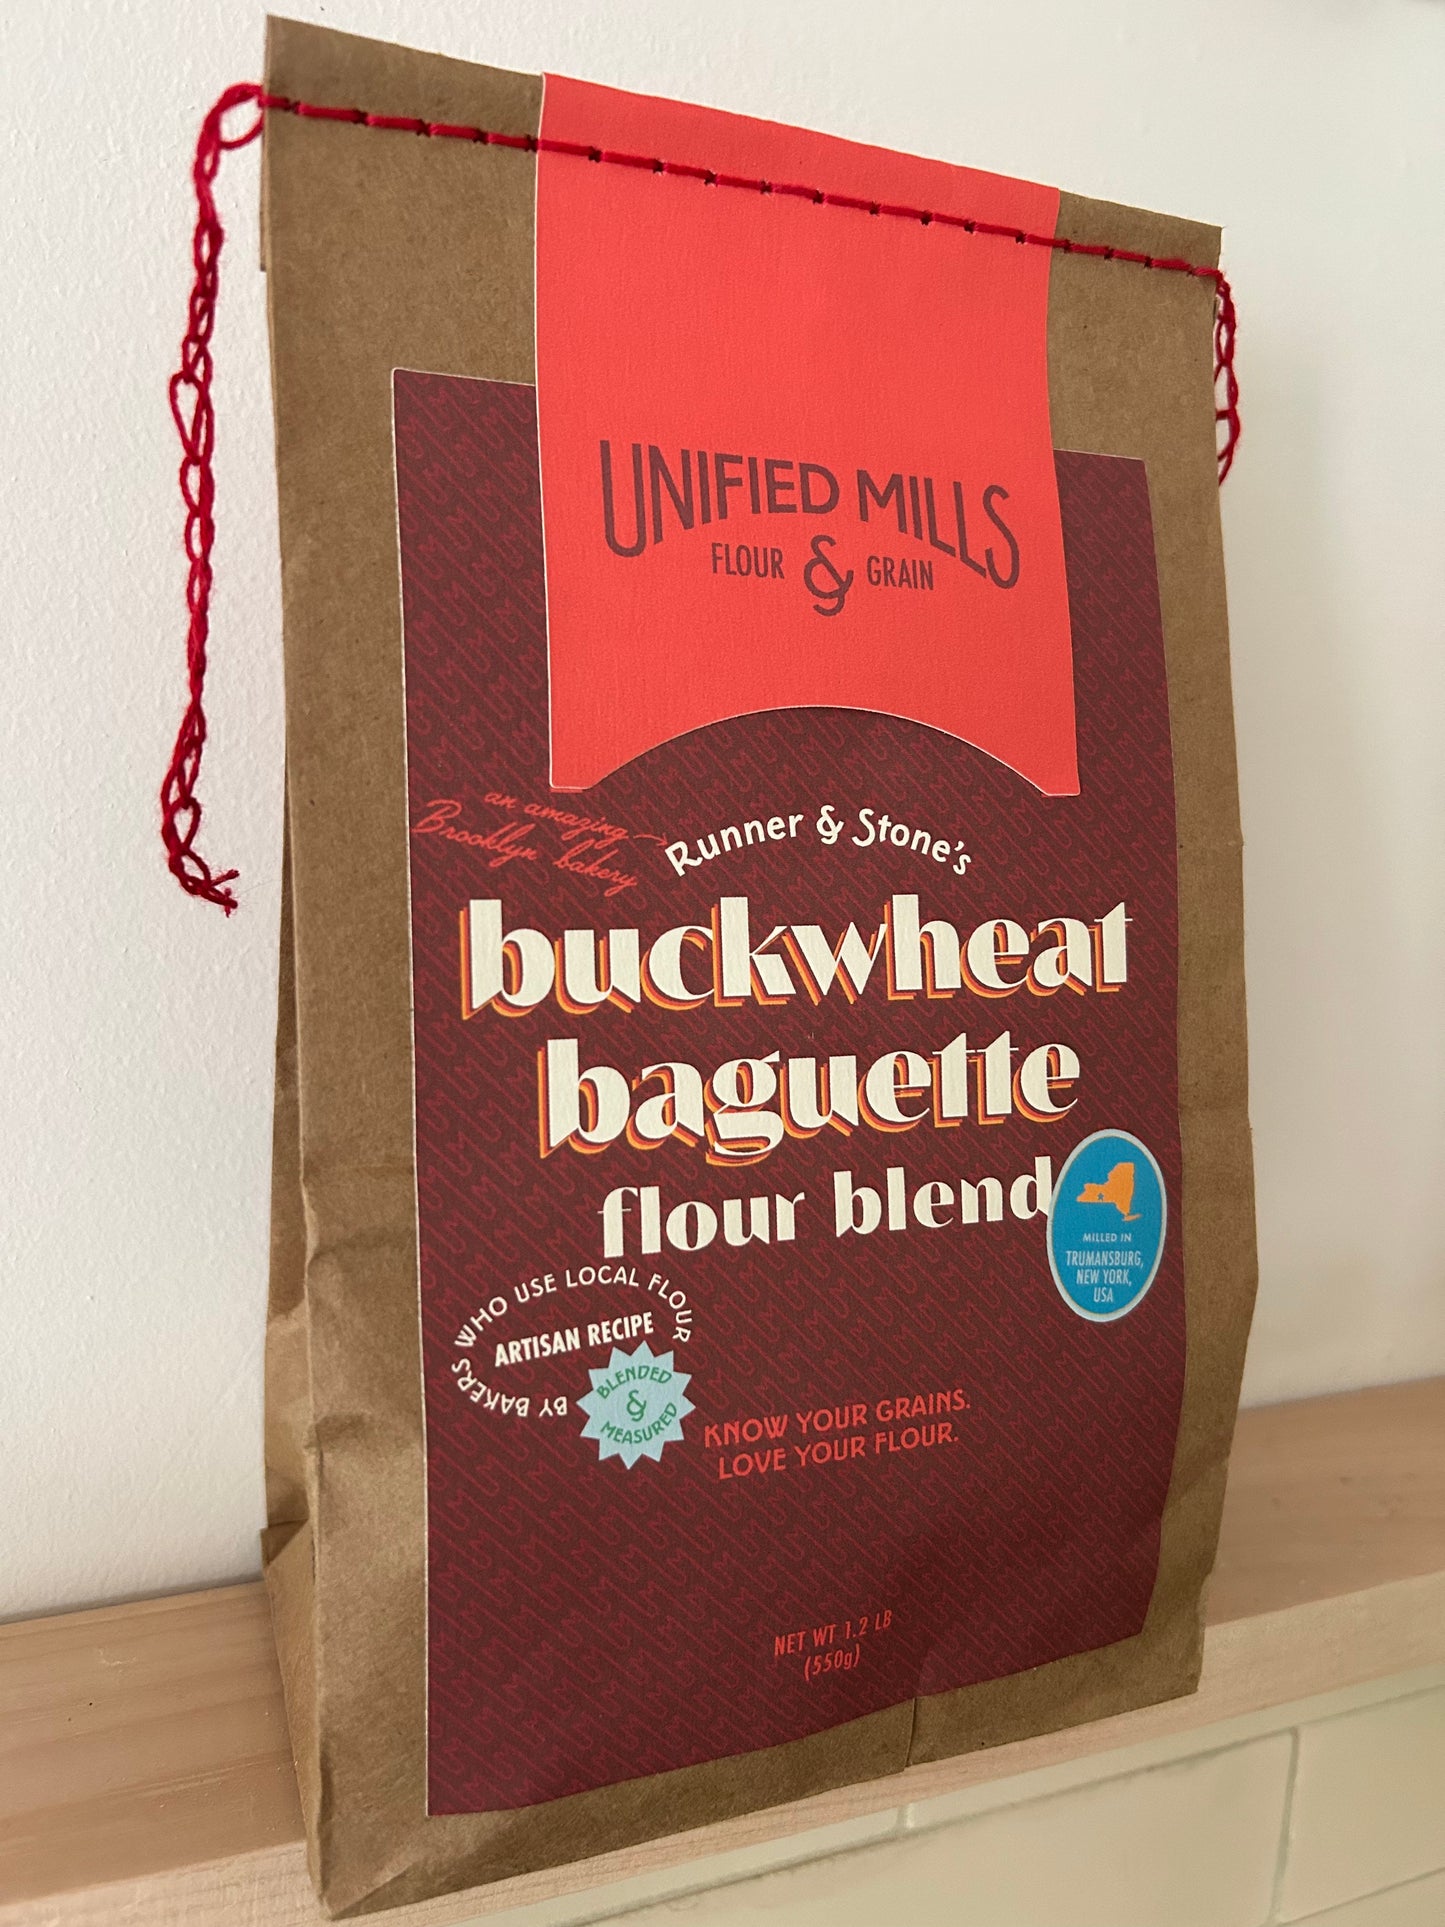 Buckwheat Baguette Flour Blend, from Runner & Stone